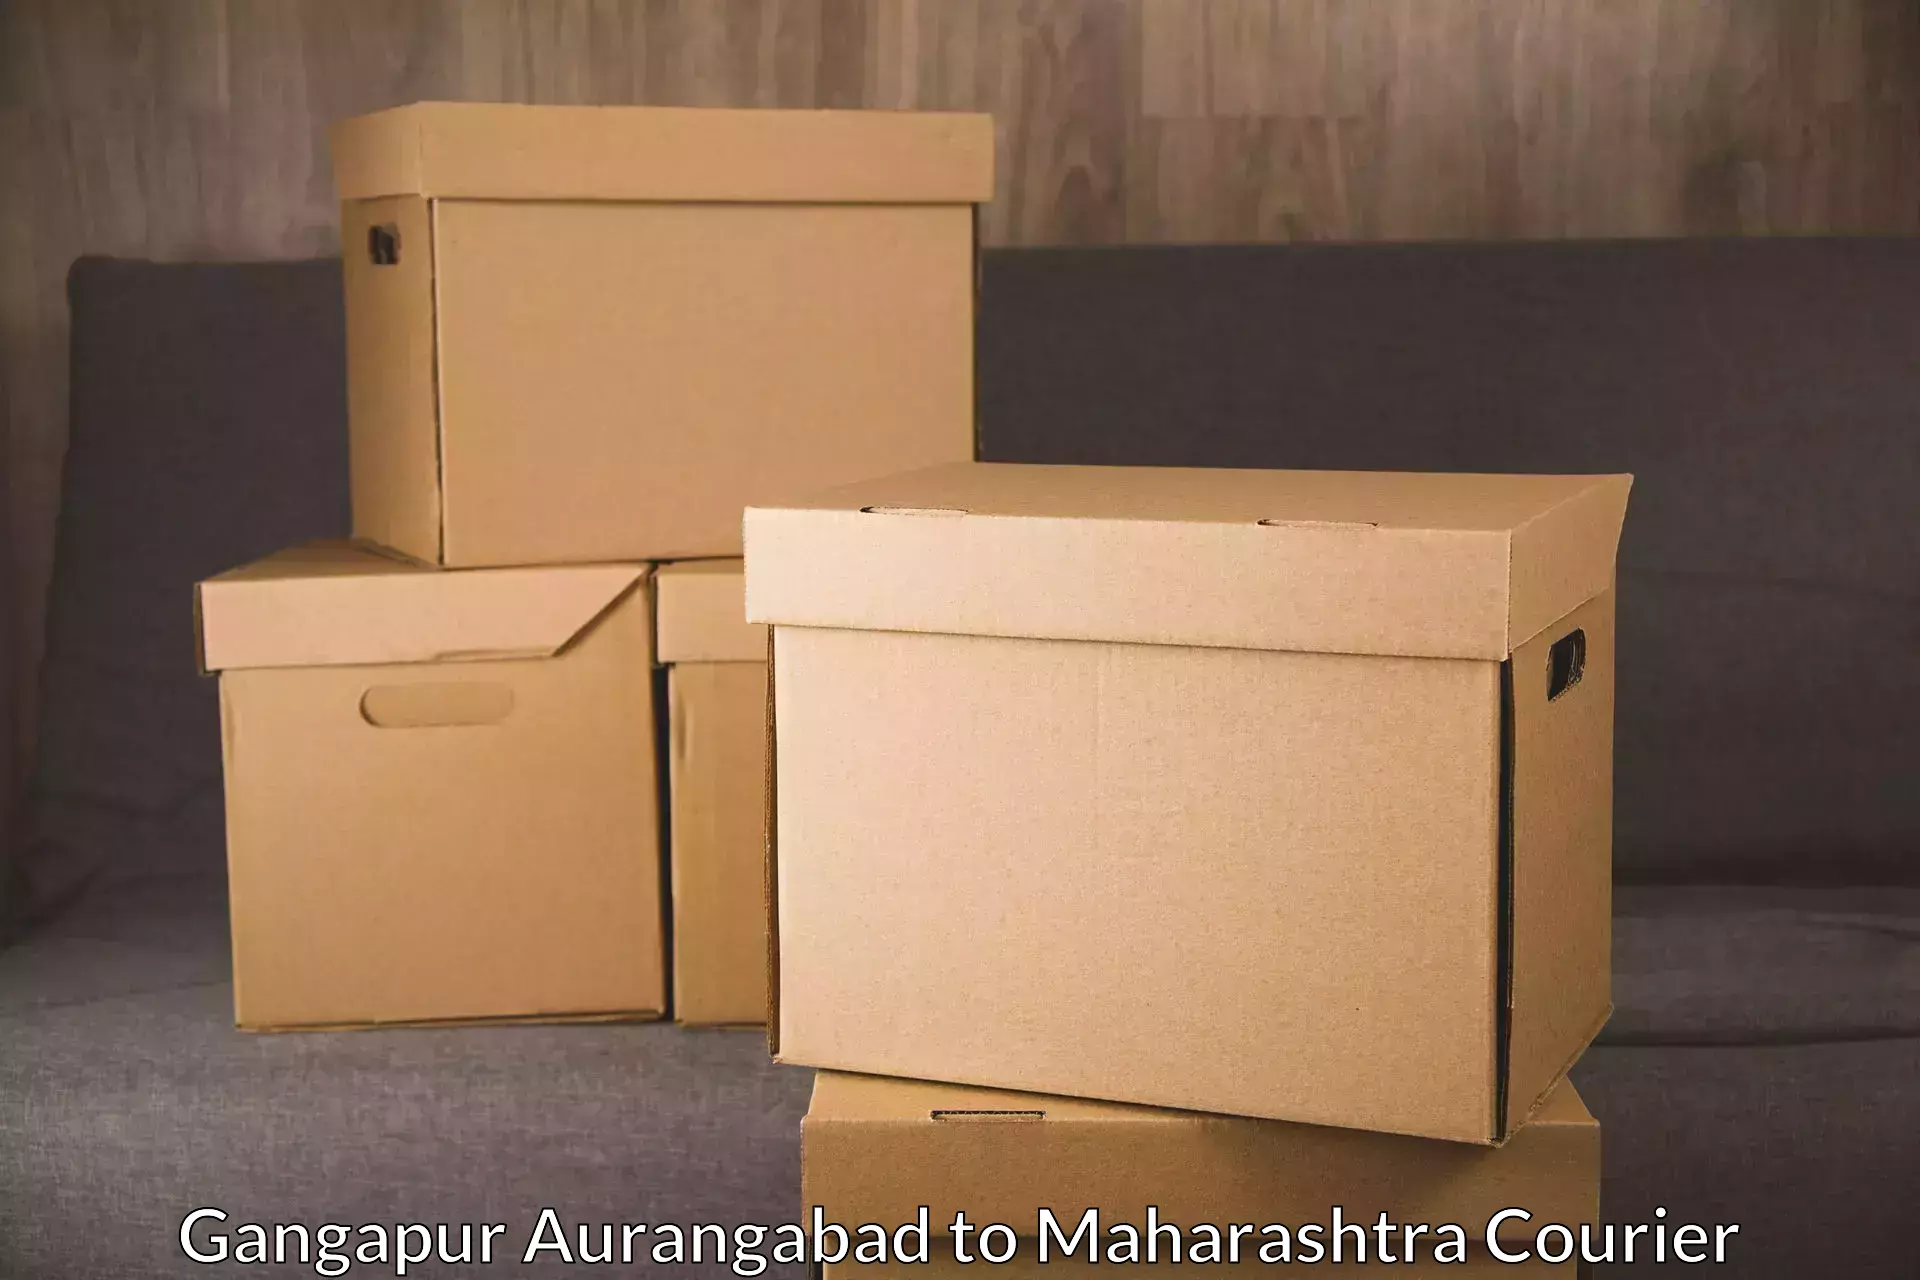 Courier service comparison in Gangapur Aurangabad to Latur